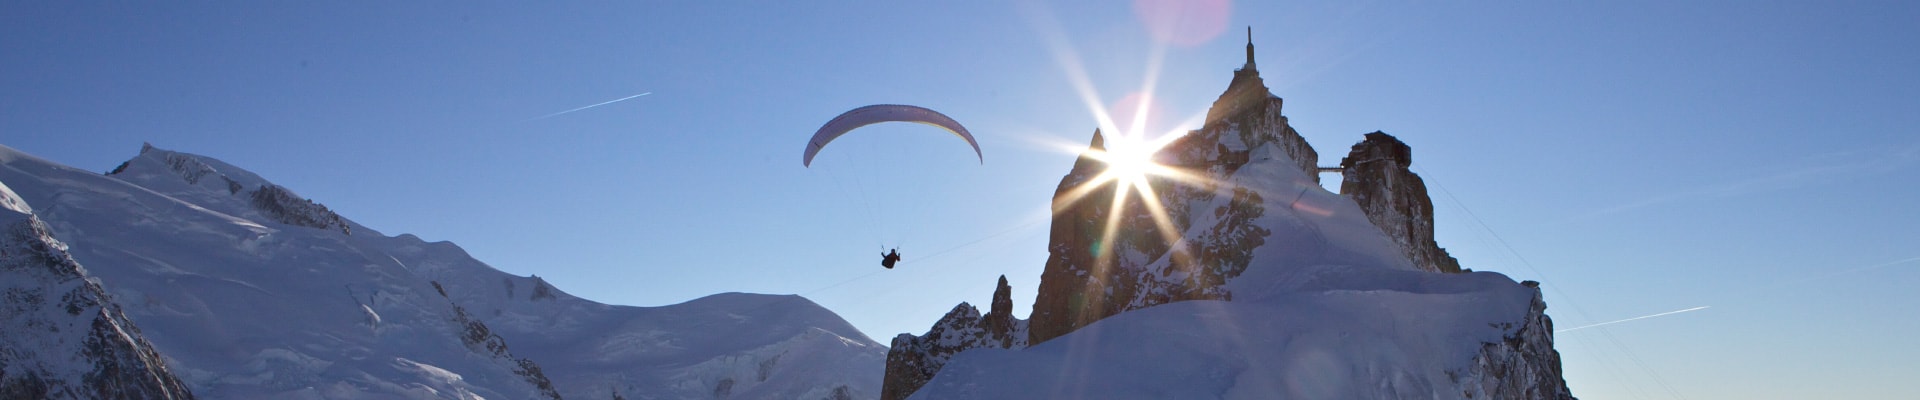 Offrez une expérience inoubliable à vos proches avec ce bon cadeau vol parapente à Chamonix !